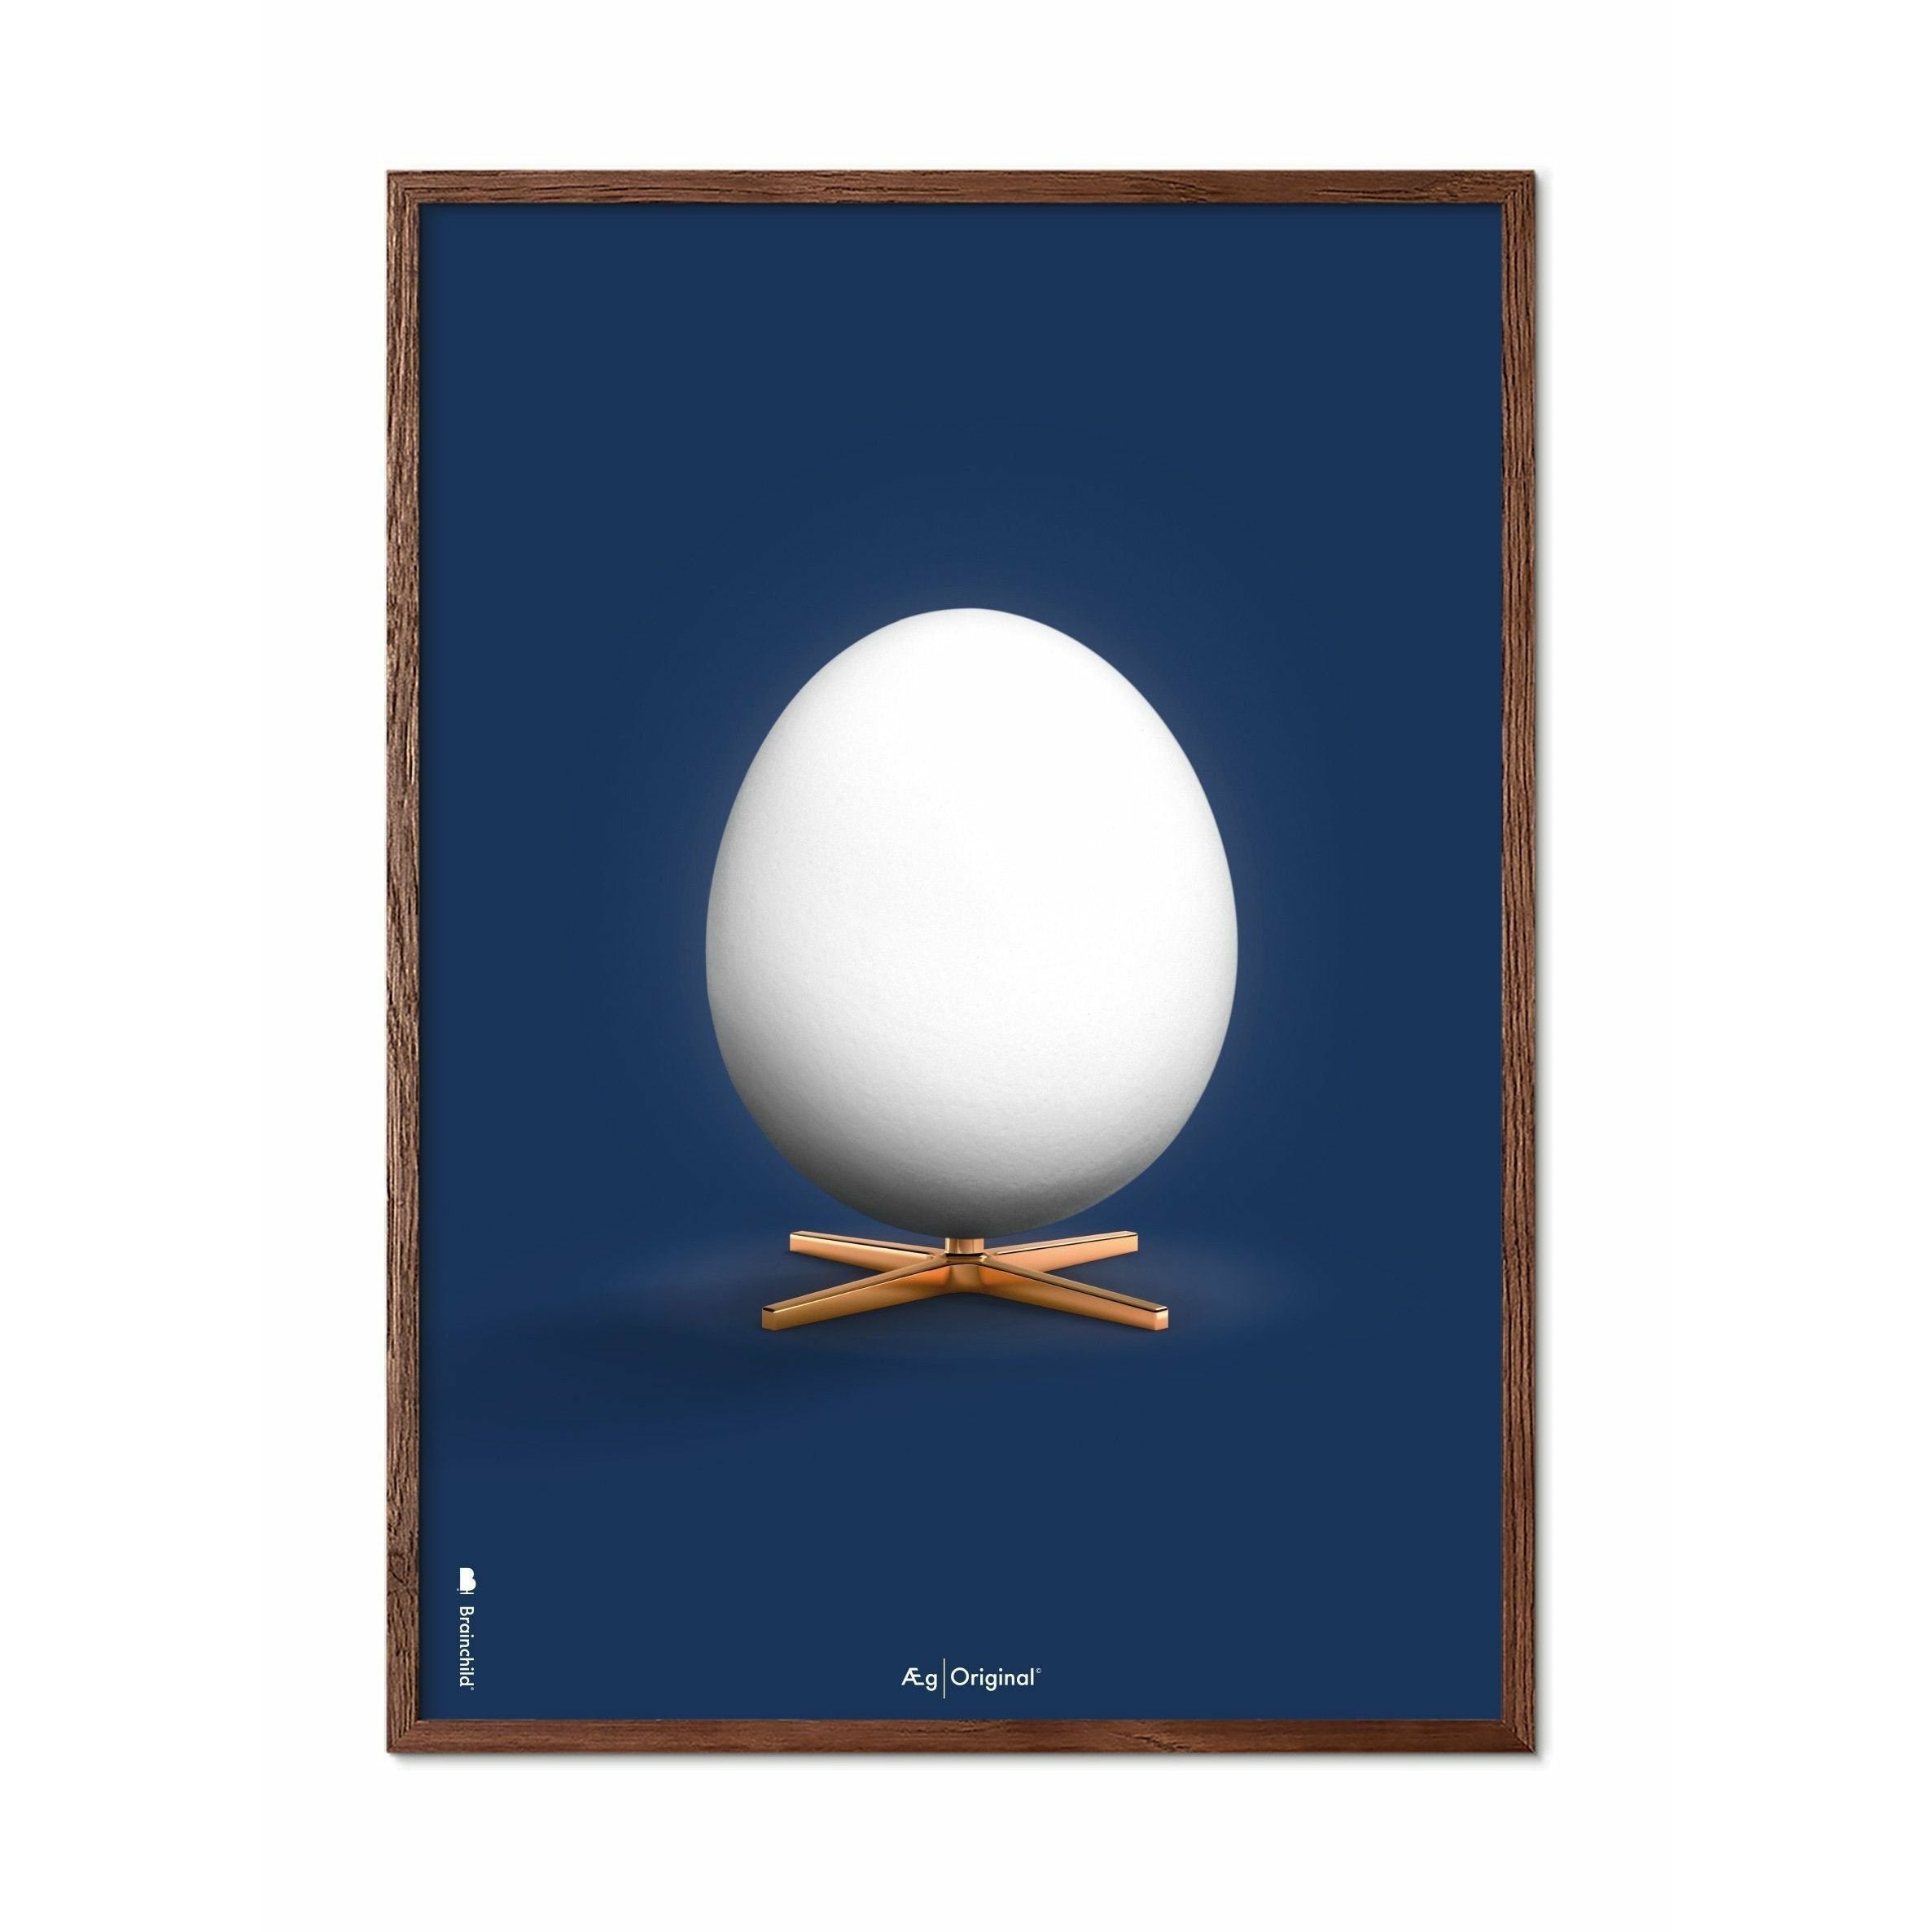 Póster clásico de huevo de creación, marco de madera oscura 70 x100 cm, fondo azul oscuro